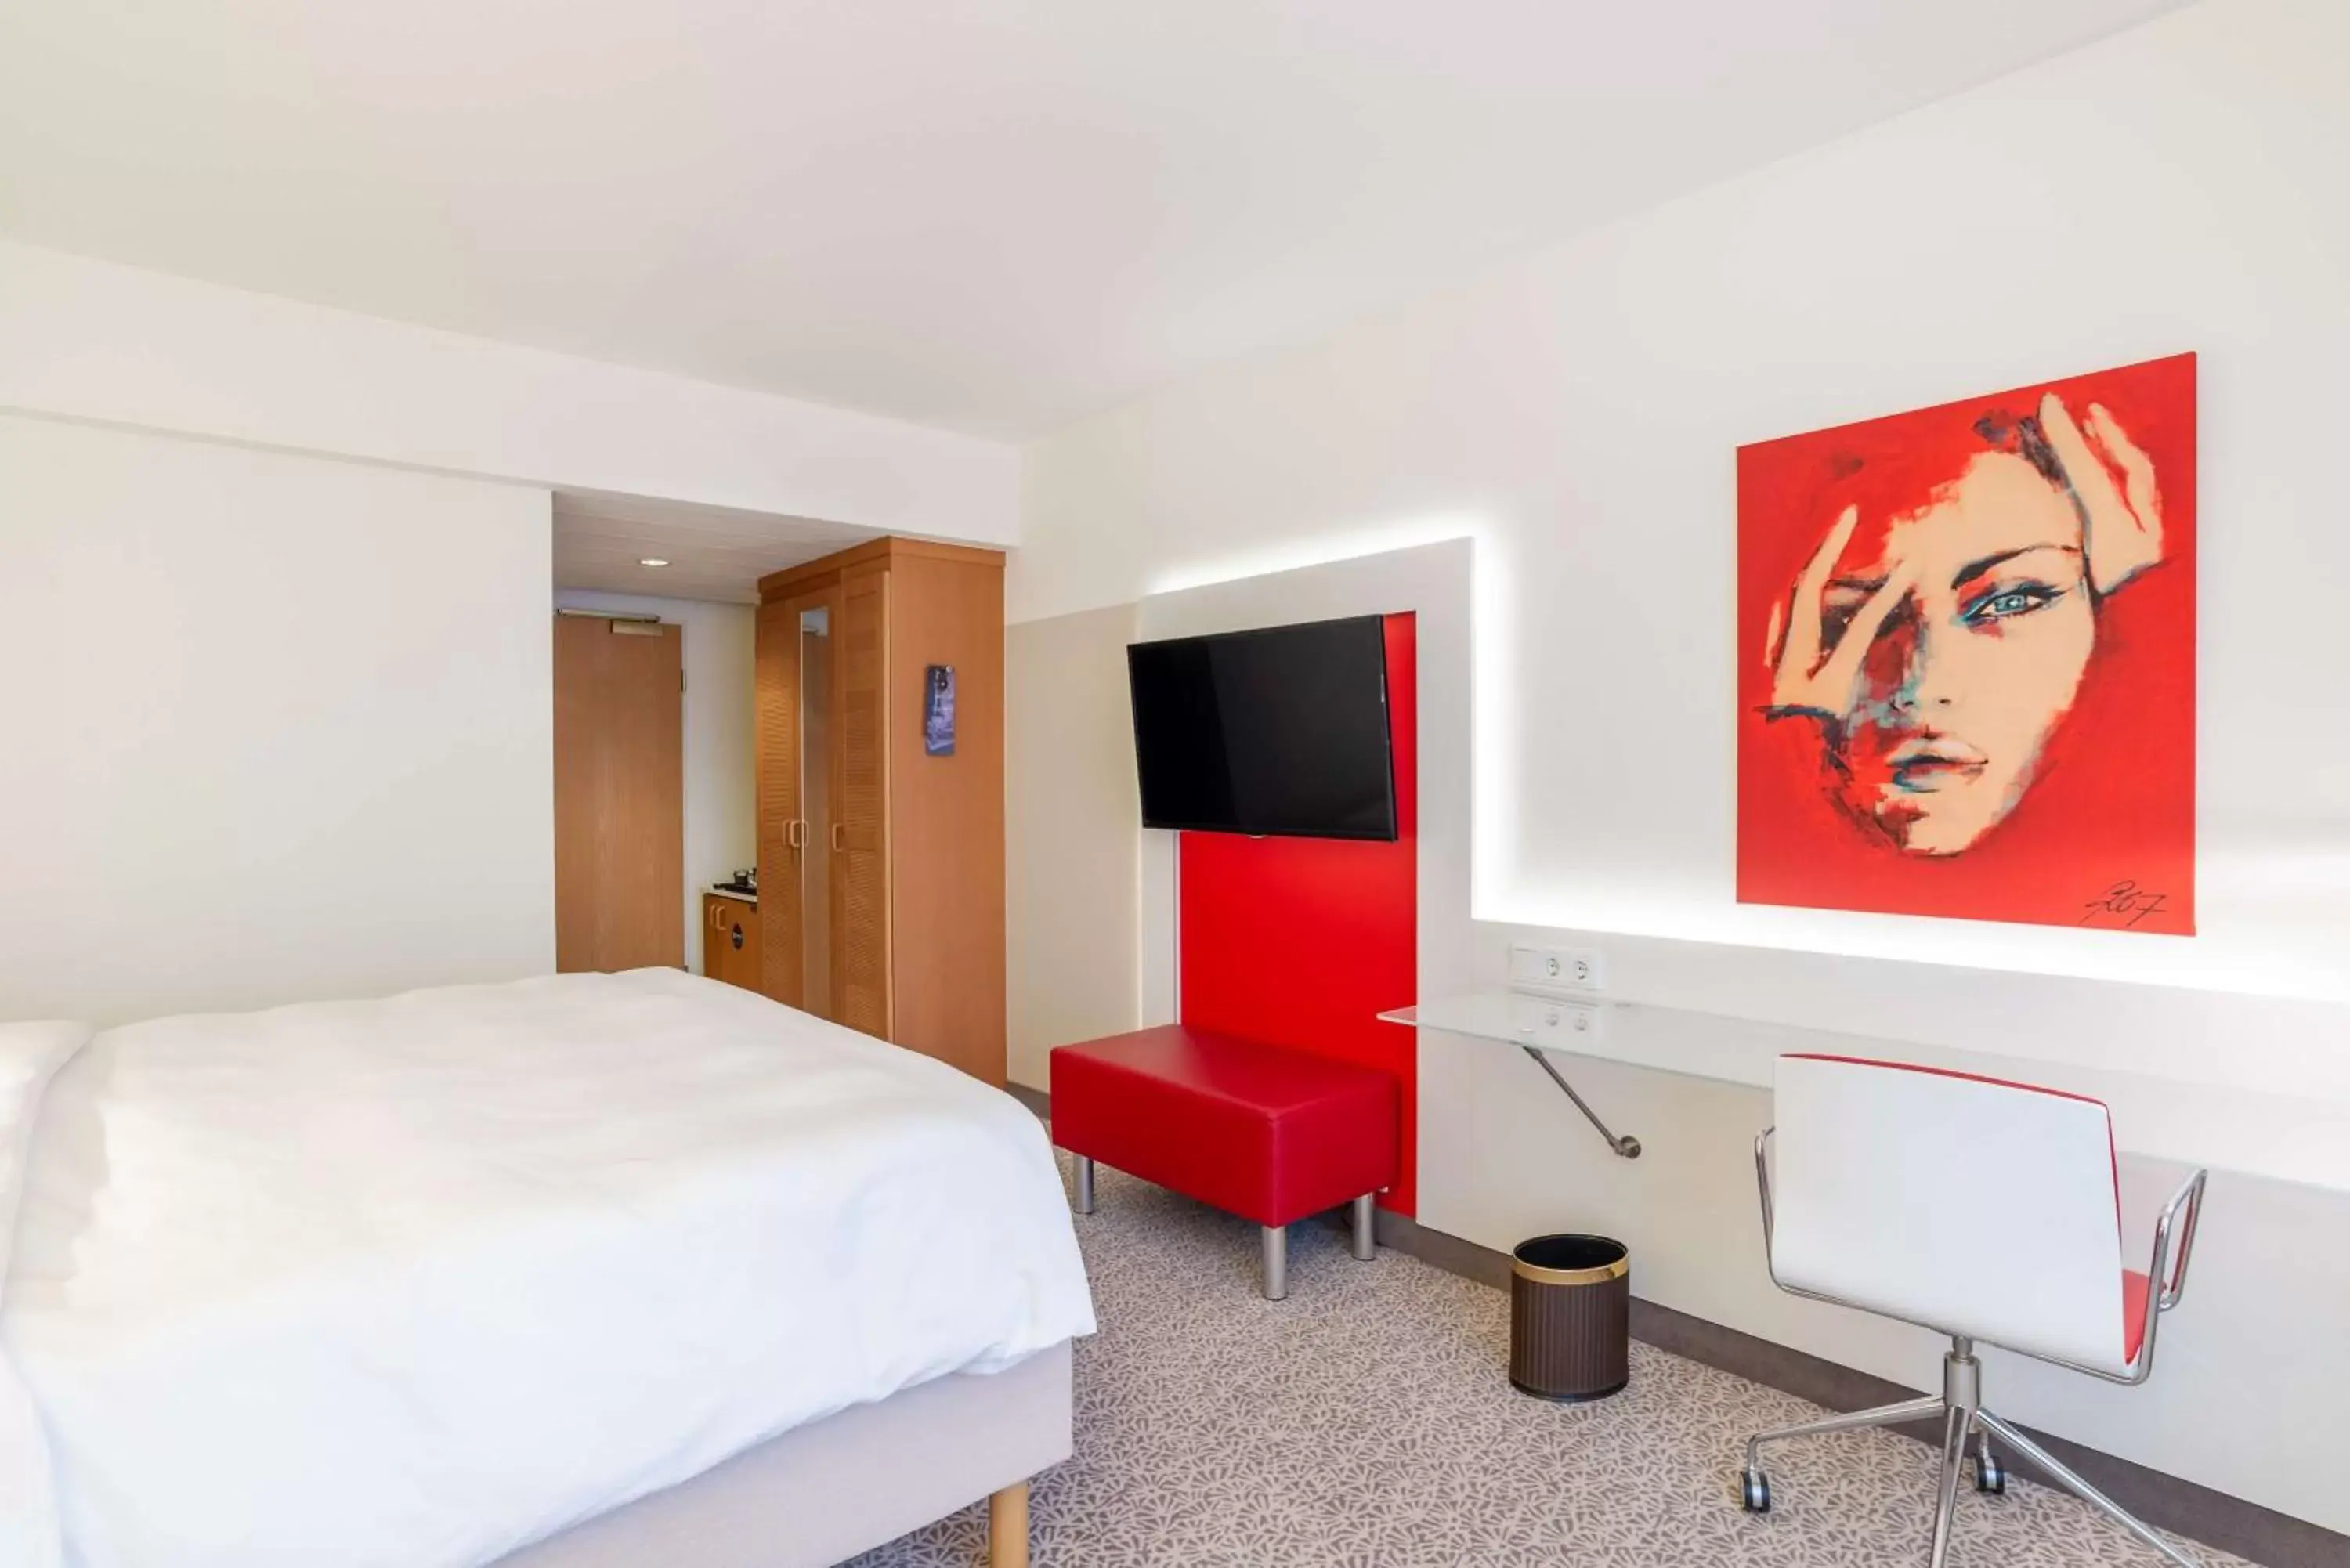 Bedroom, TV/Entertainment Center in Radisson Blu Hotel Karlsruhe